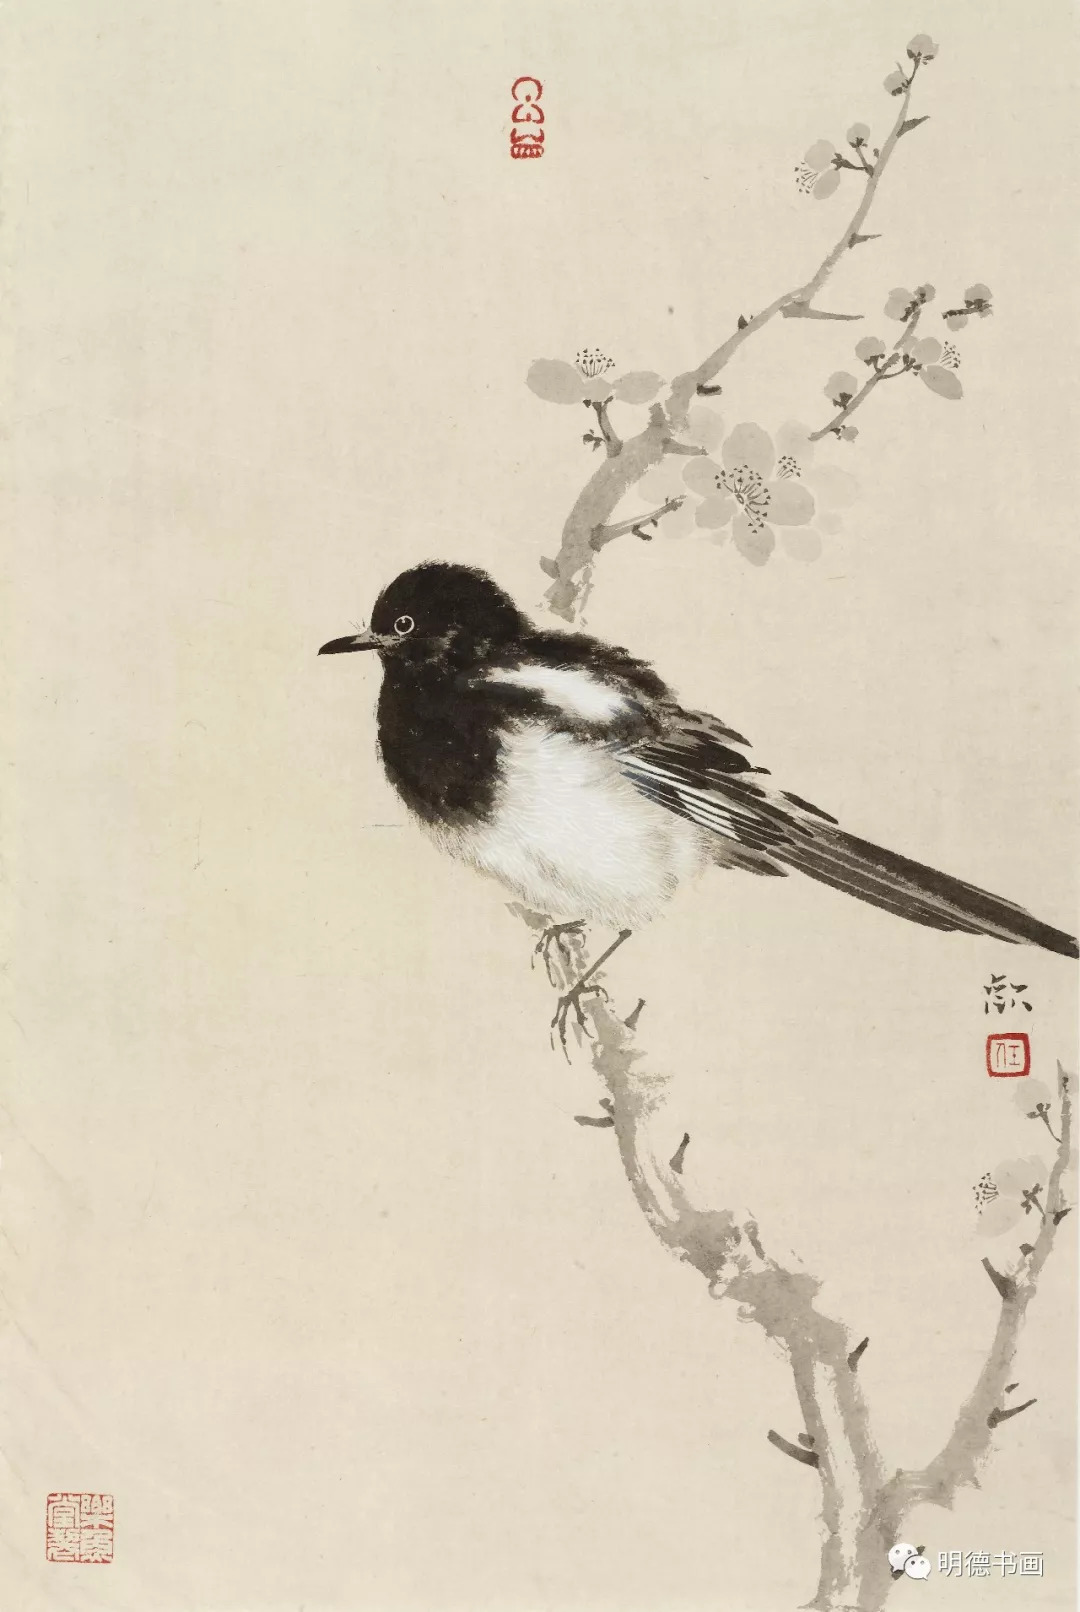 四川美术出版社出版发行 《中国当代著名花鸟画家 任欢》北京工艺美术